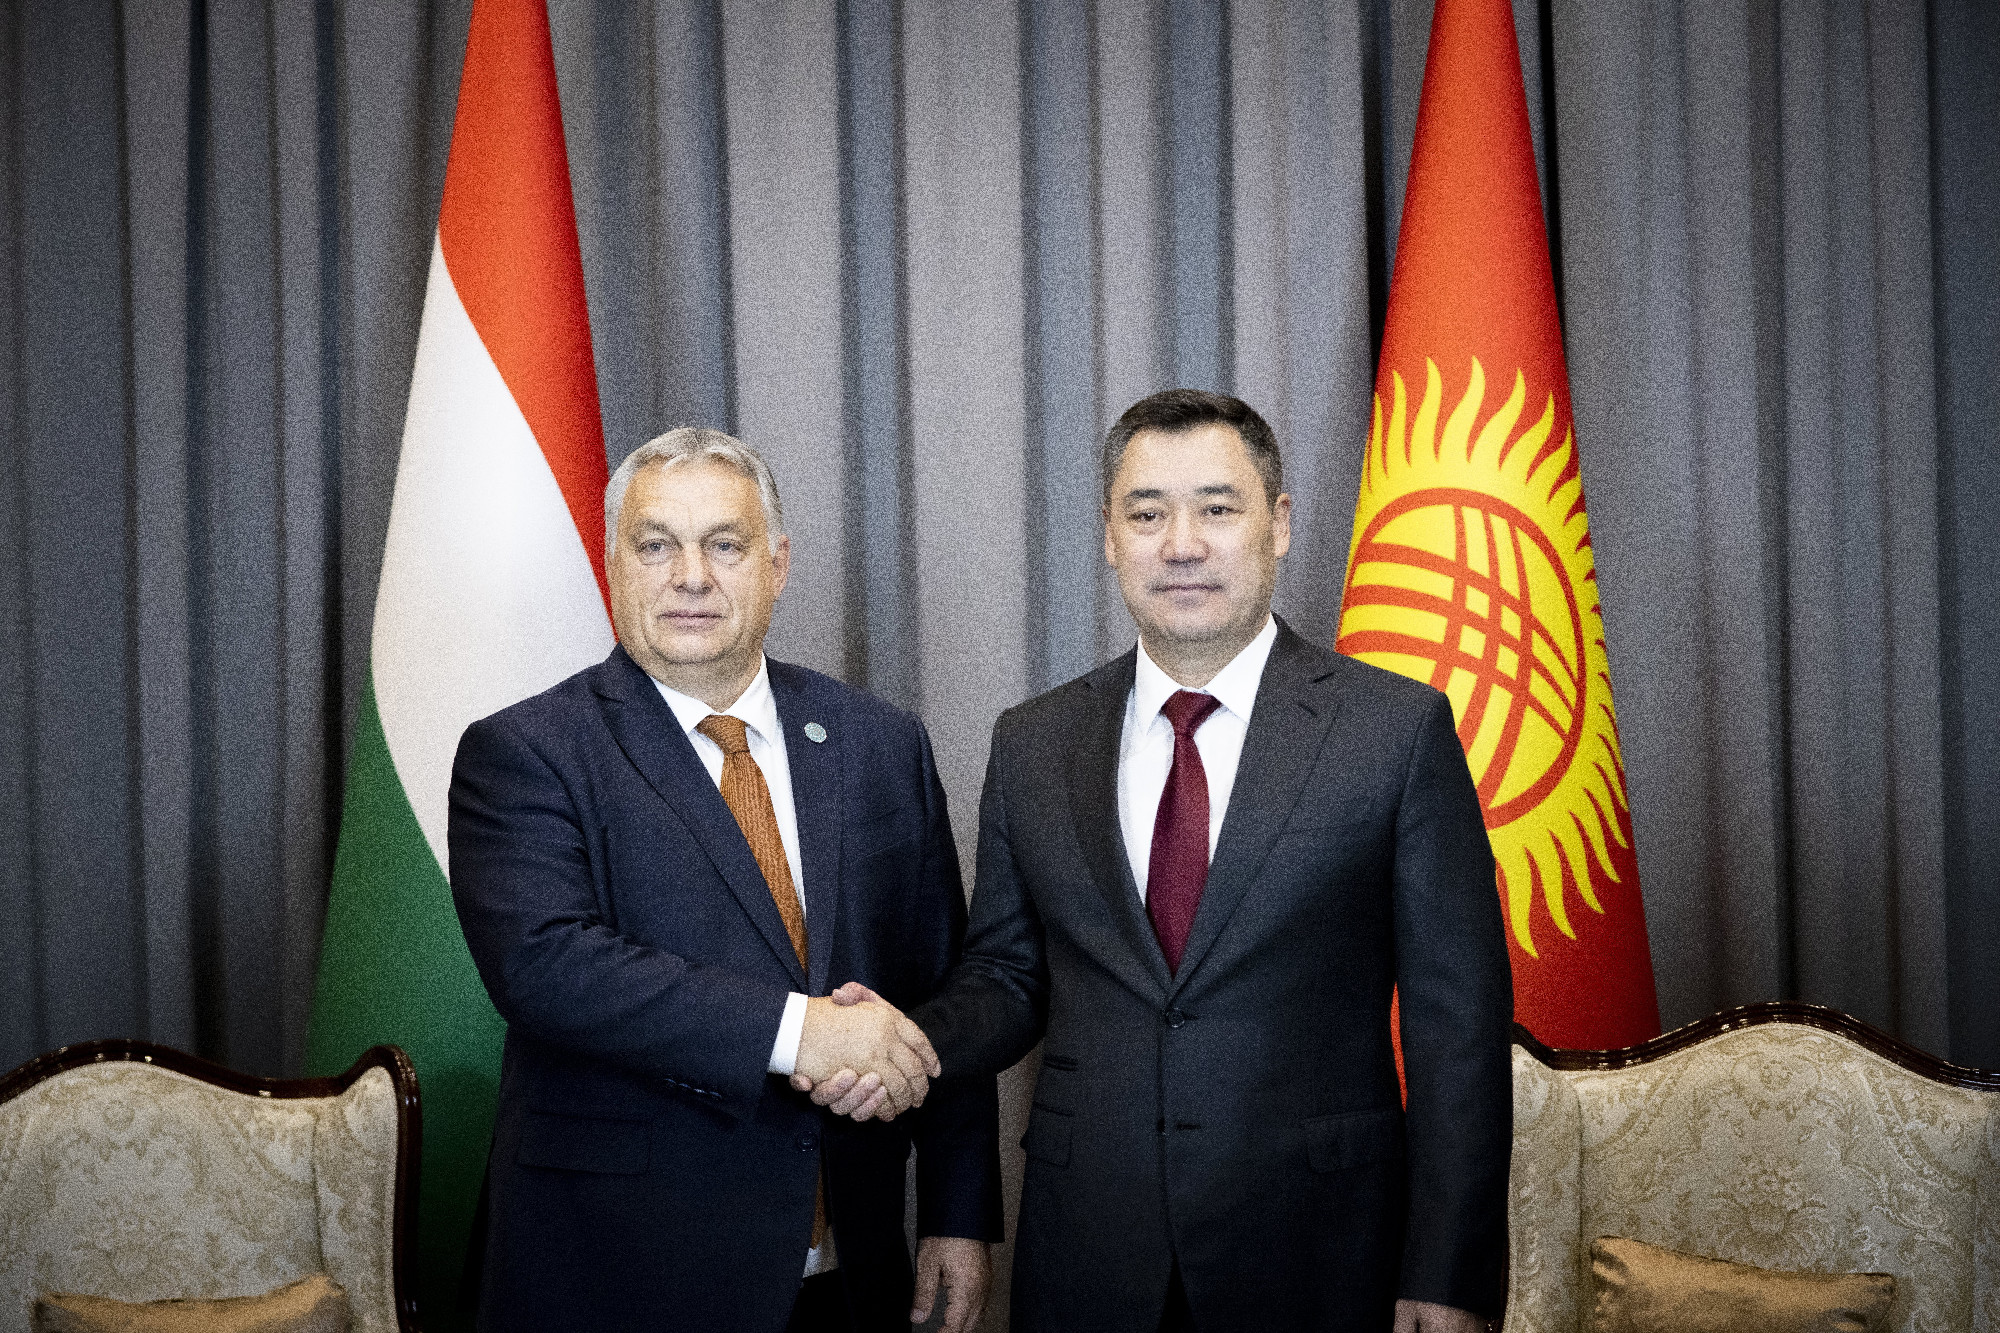 Üzbegisztánból jelentkezett be Orbán Viktor, OTP-ügylet is van a láthatáron